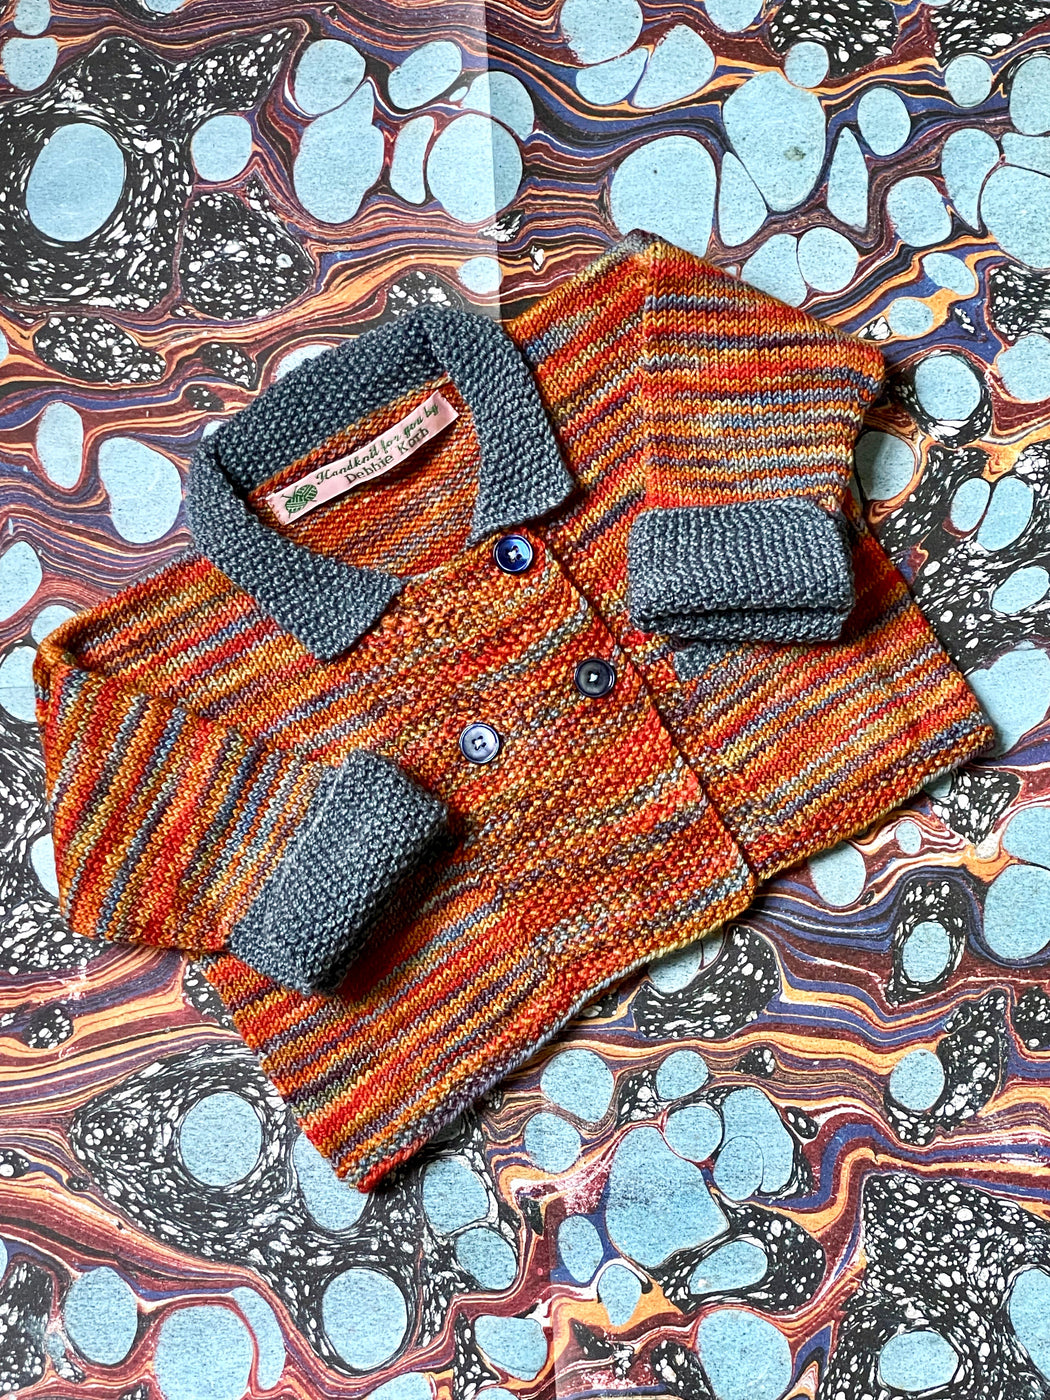 Aunt Debbie's Hand-Knit Children's Sweater (1 - 2 years)